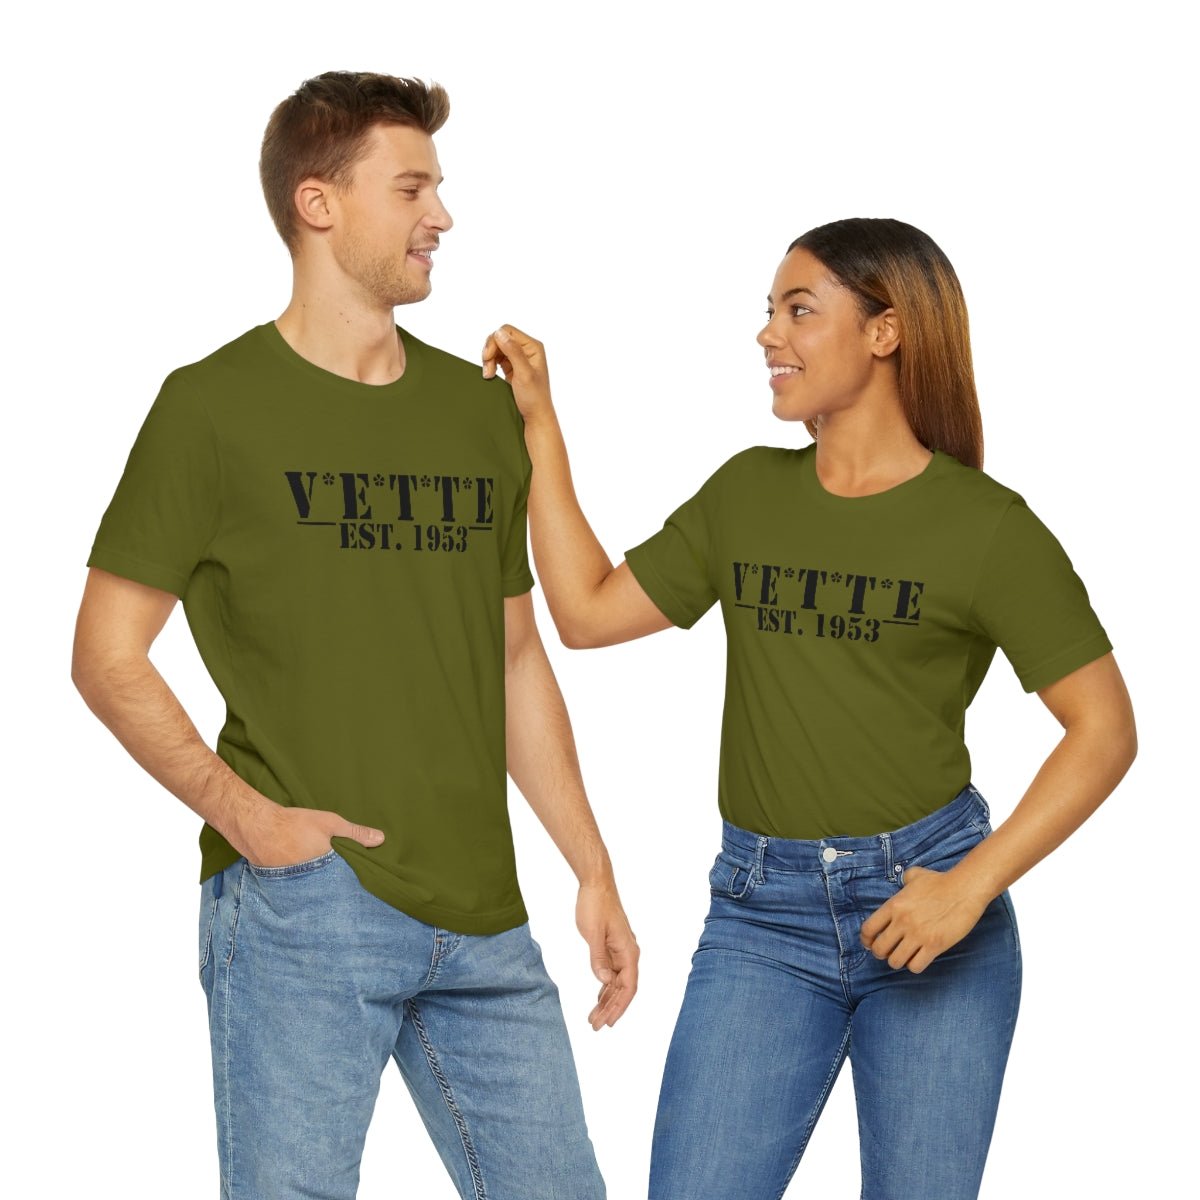 V*E*T*T*E Army T-Shirt - Vette1 - Misc. Men's T-Shirts